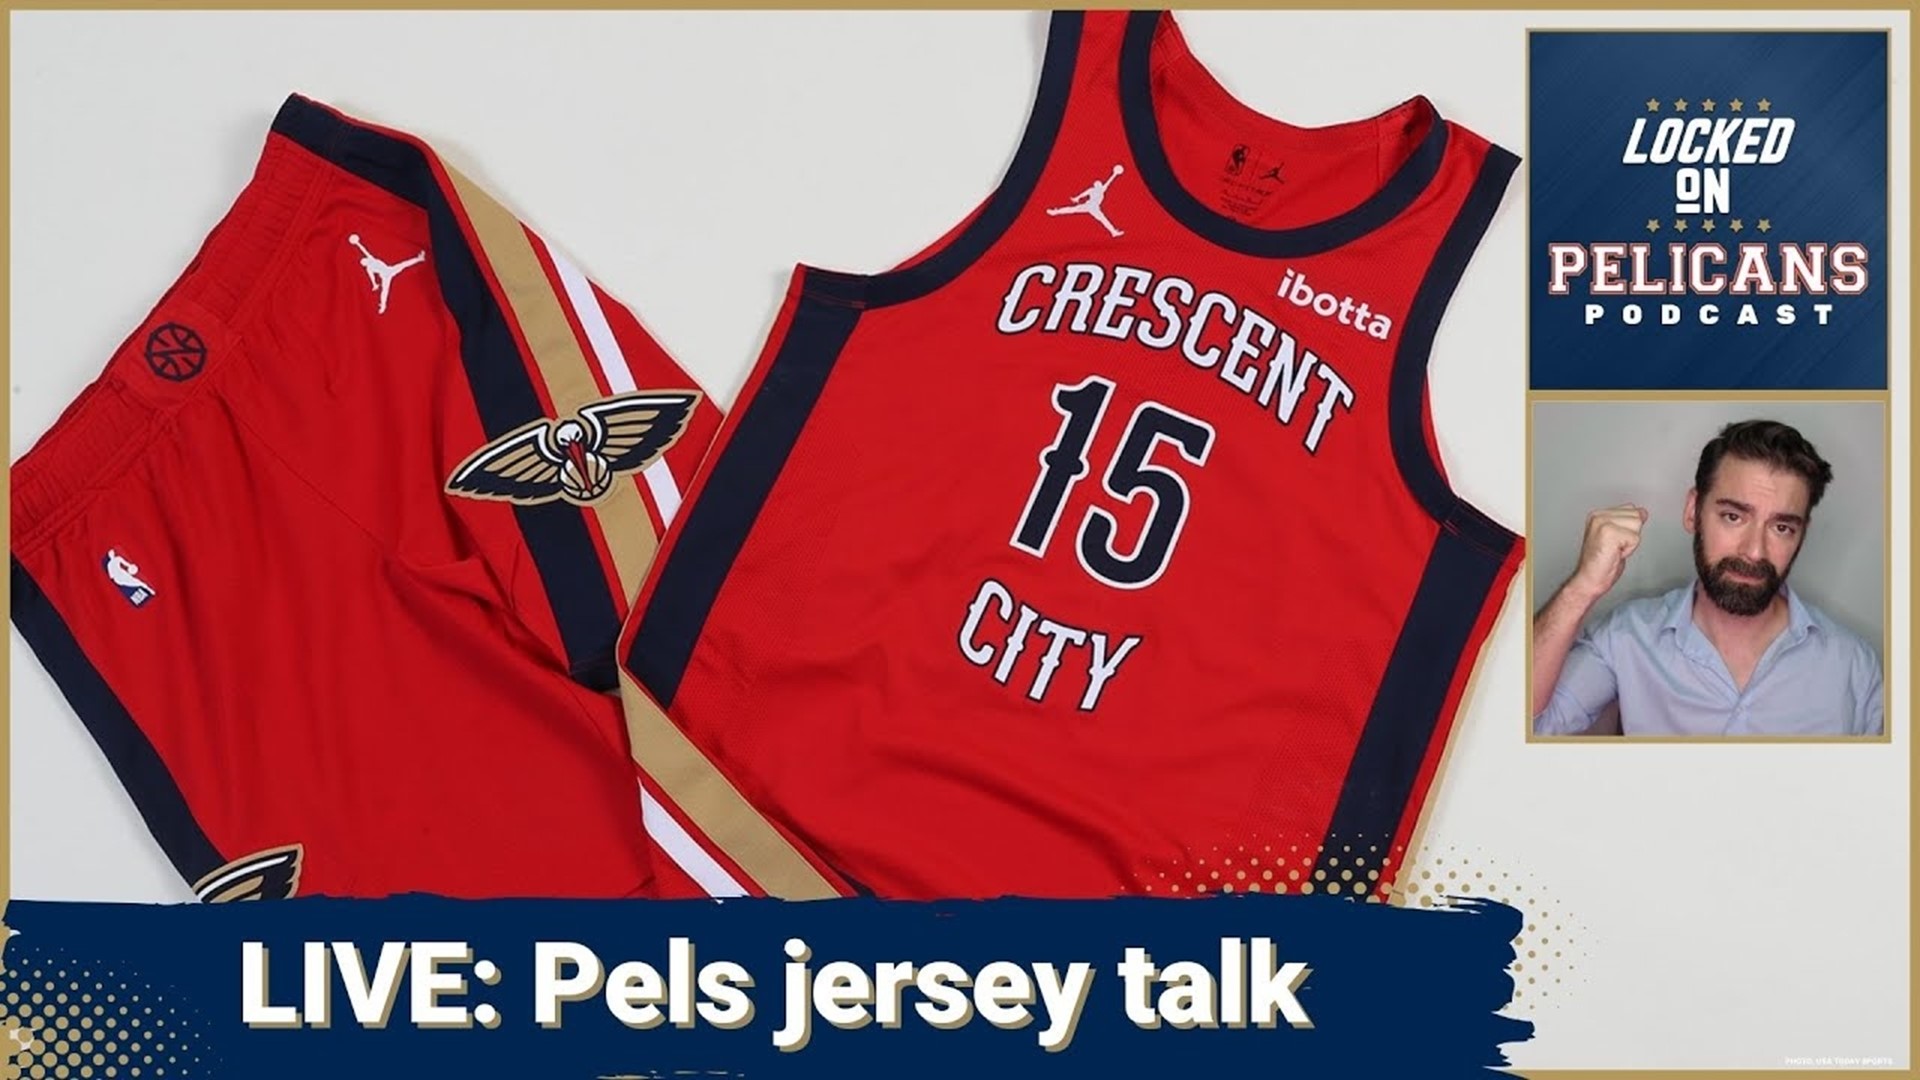 New Orleans Pelicans unveil new uniforms 